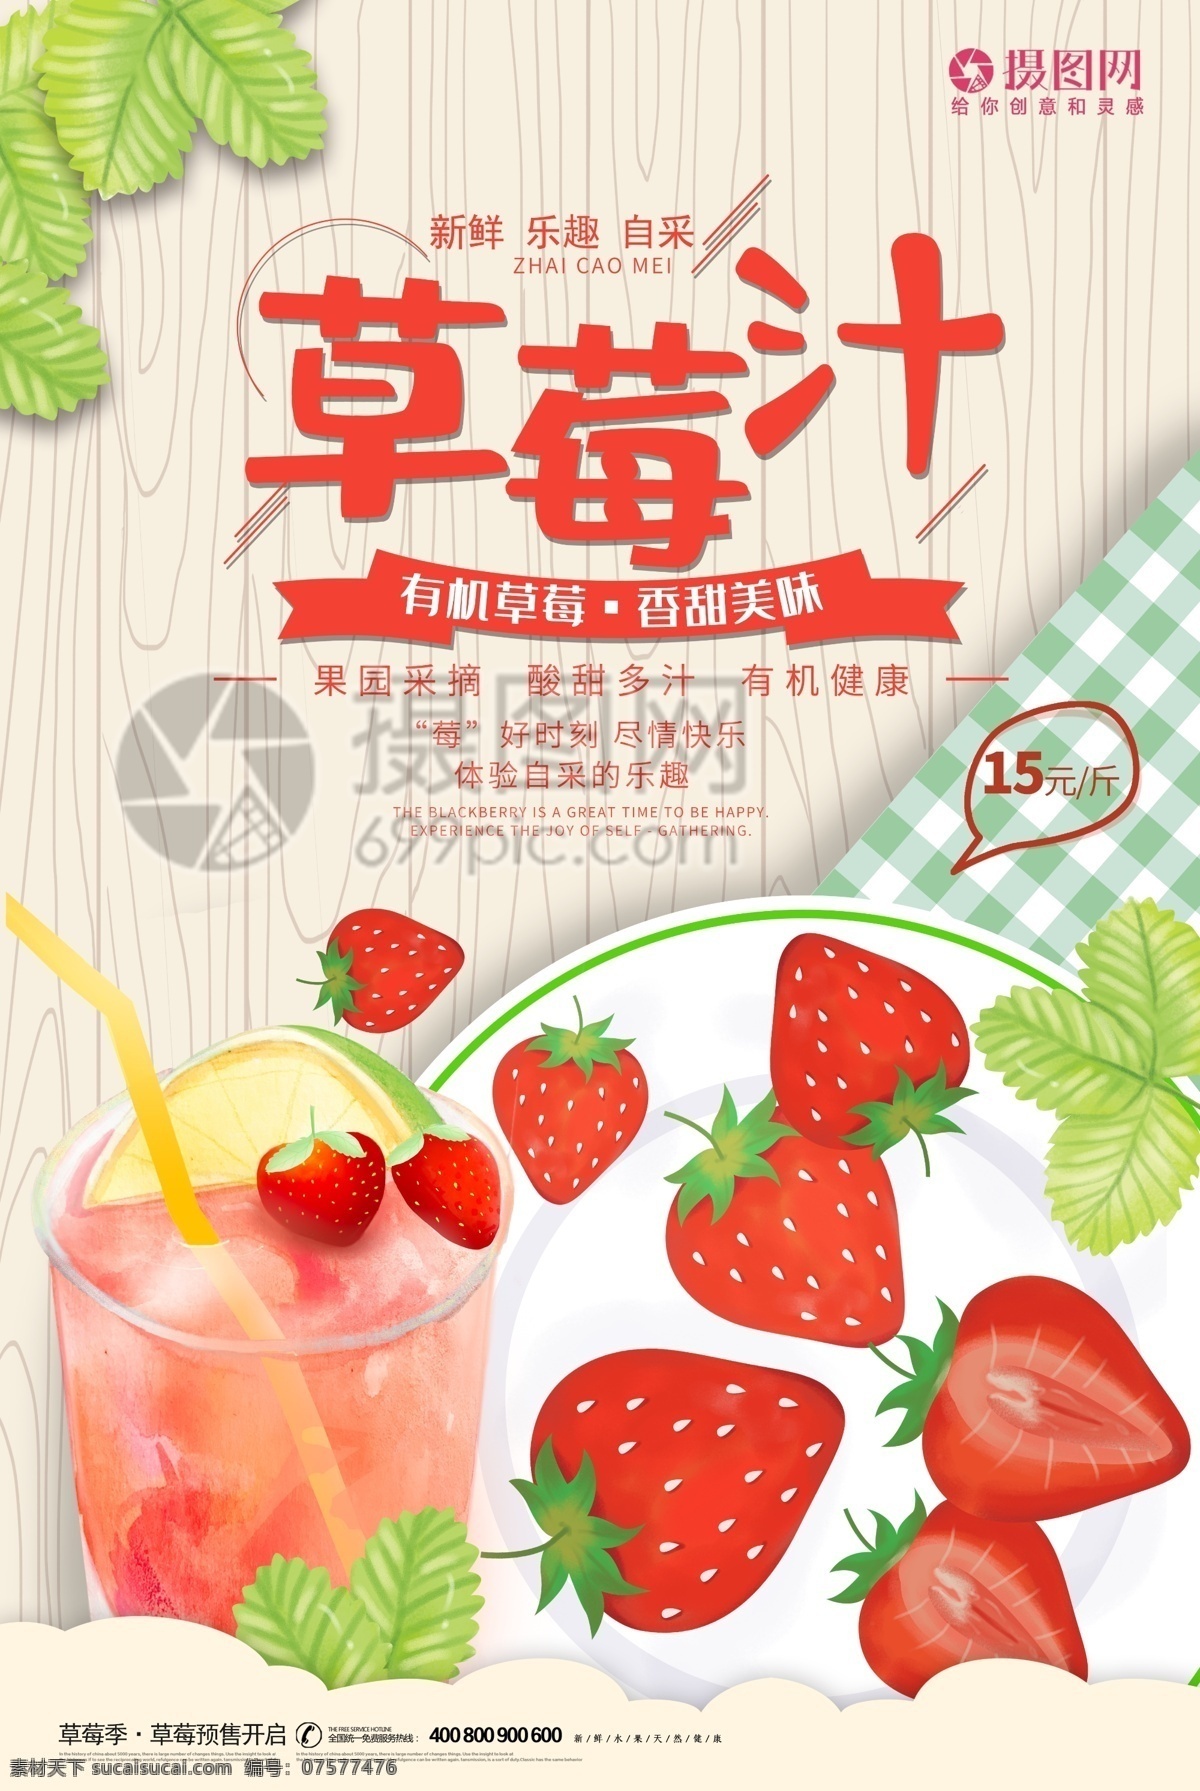 卡 通风 草莓汁 果汁 广告 海报 草莓 水果 鲜果榨汁 卡通风 美食餐饮 鲜果 果汁饮品 新鲜果汁 鲜榨果汁 草莓果汁